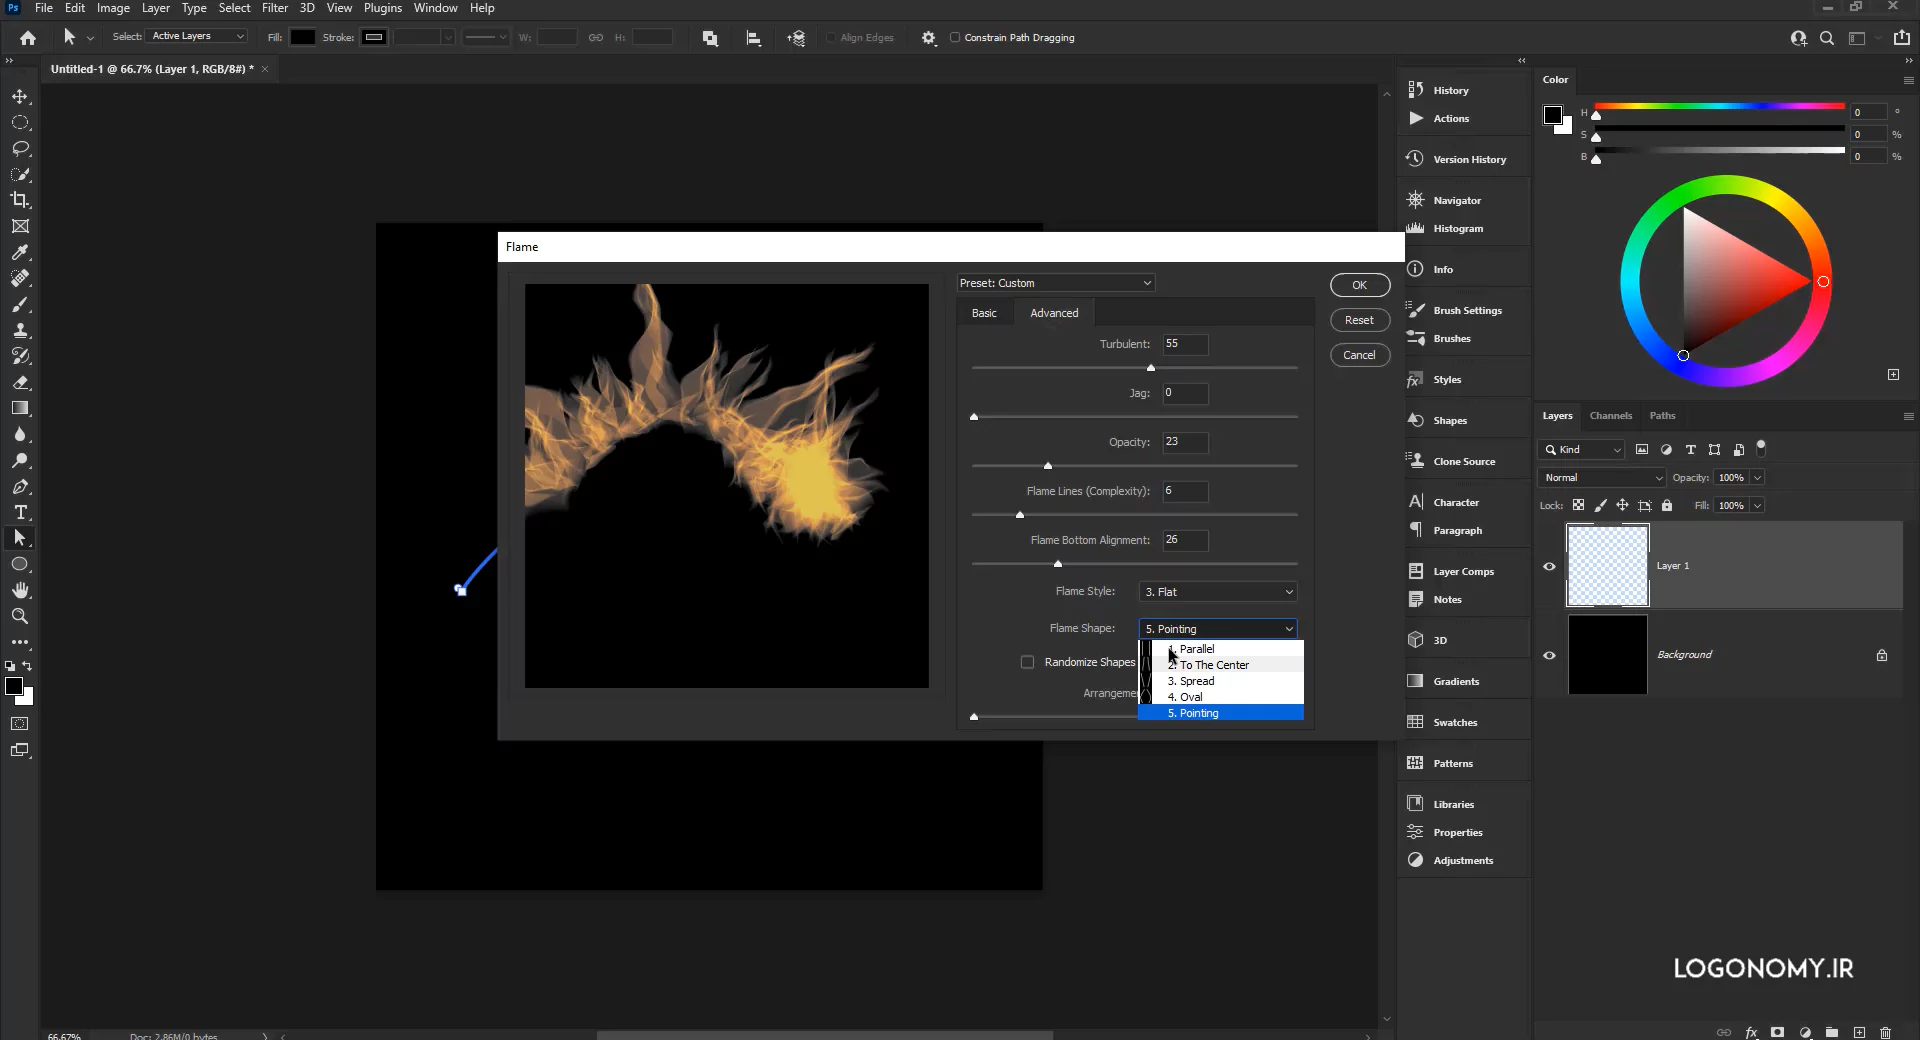 معرفی فیلترهای Flame ،Picture Frame و Tree از مجموعه فیلترهای Render در برنامه فتوشاپ